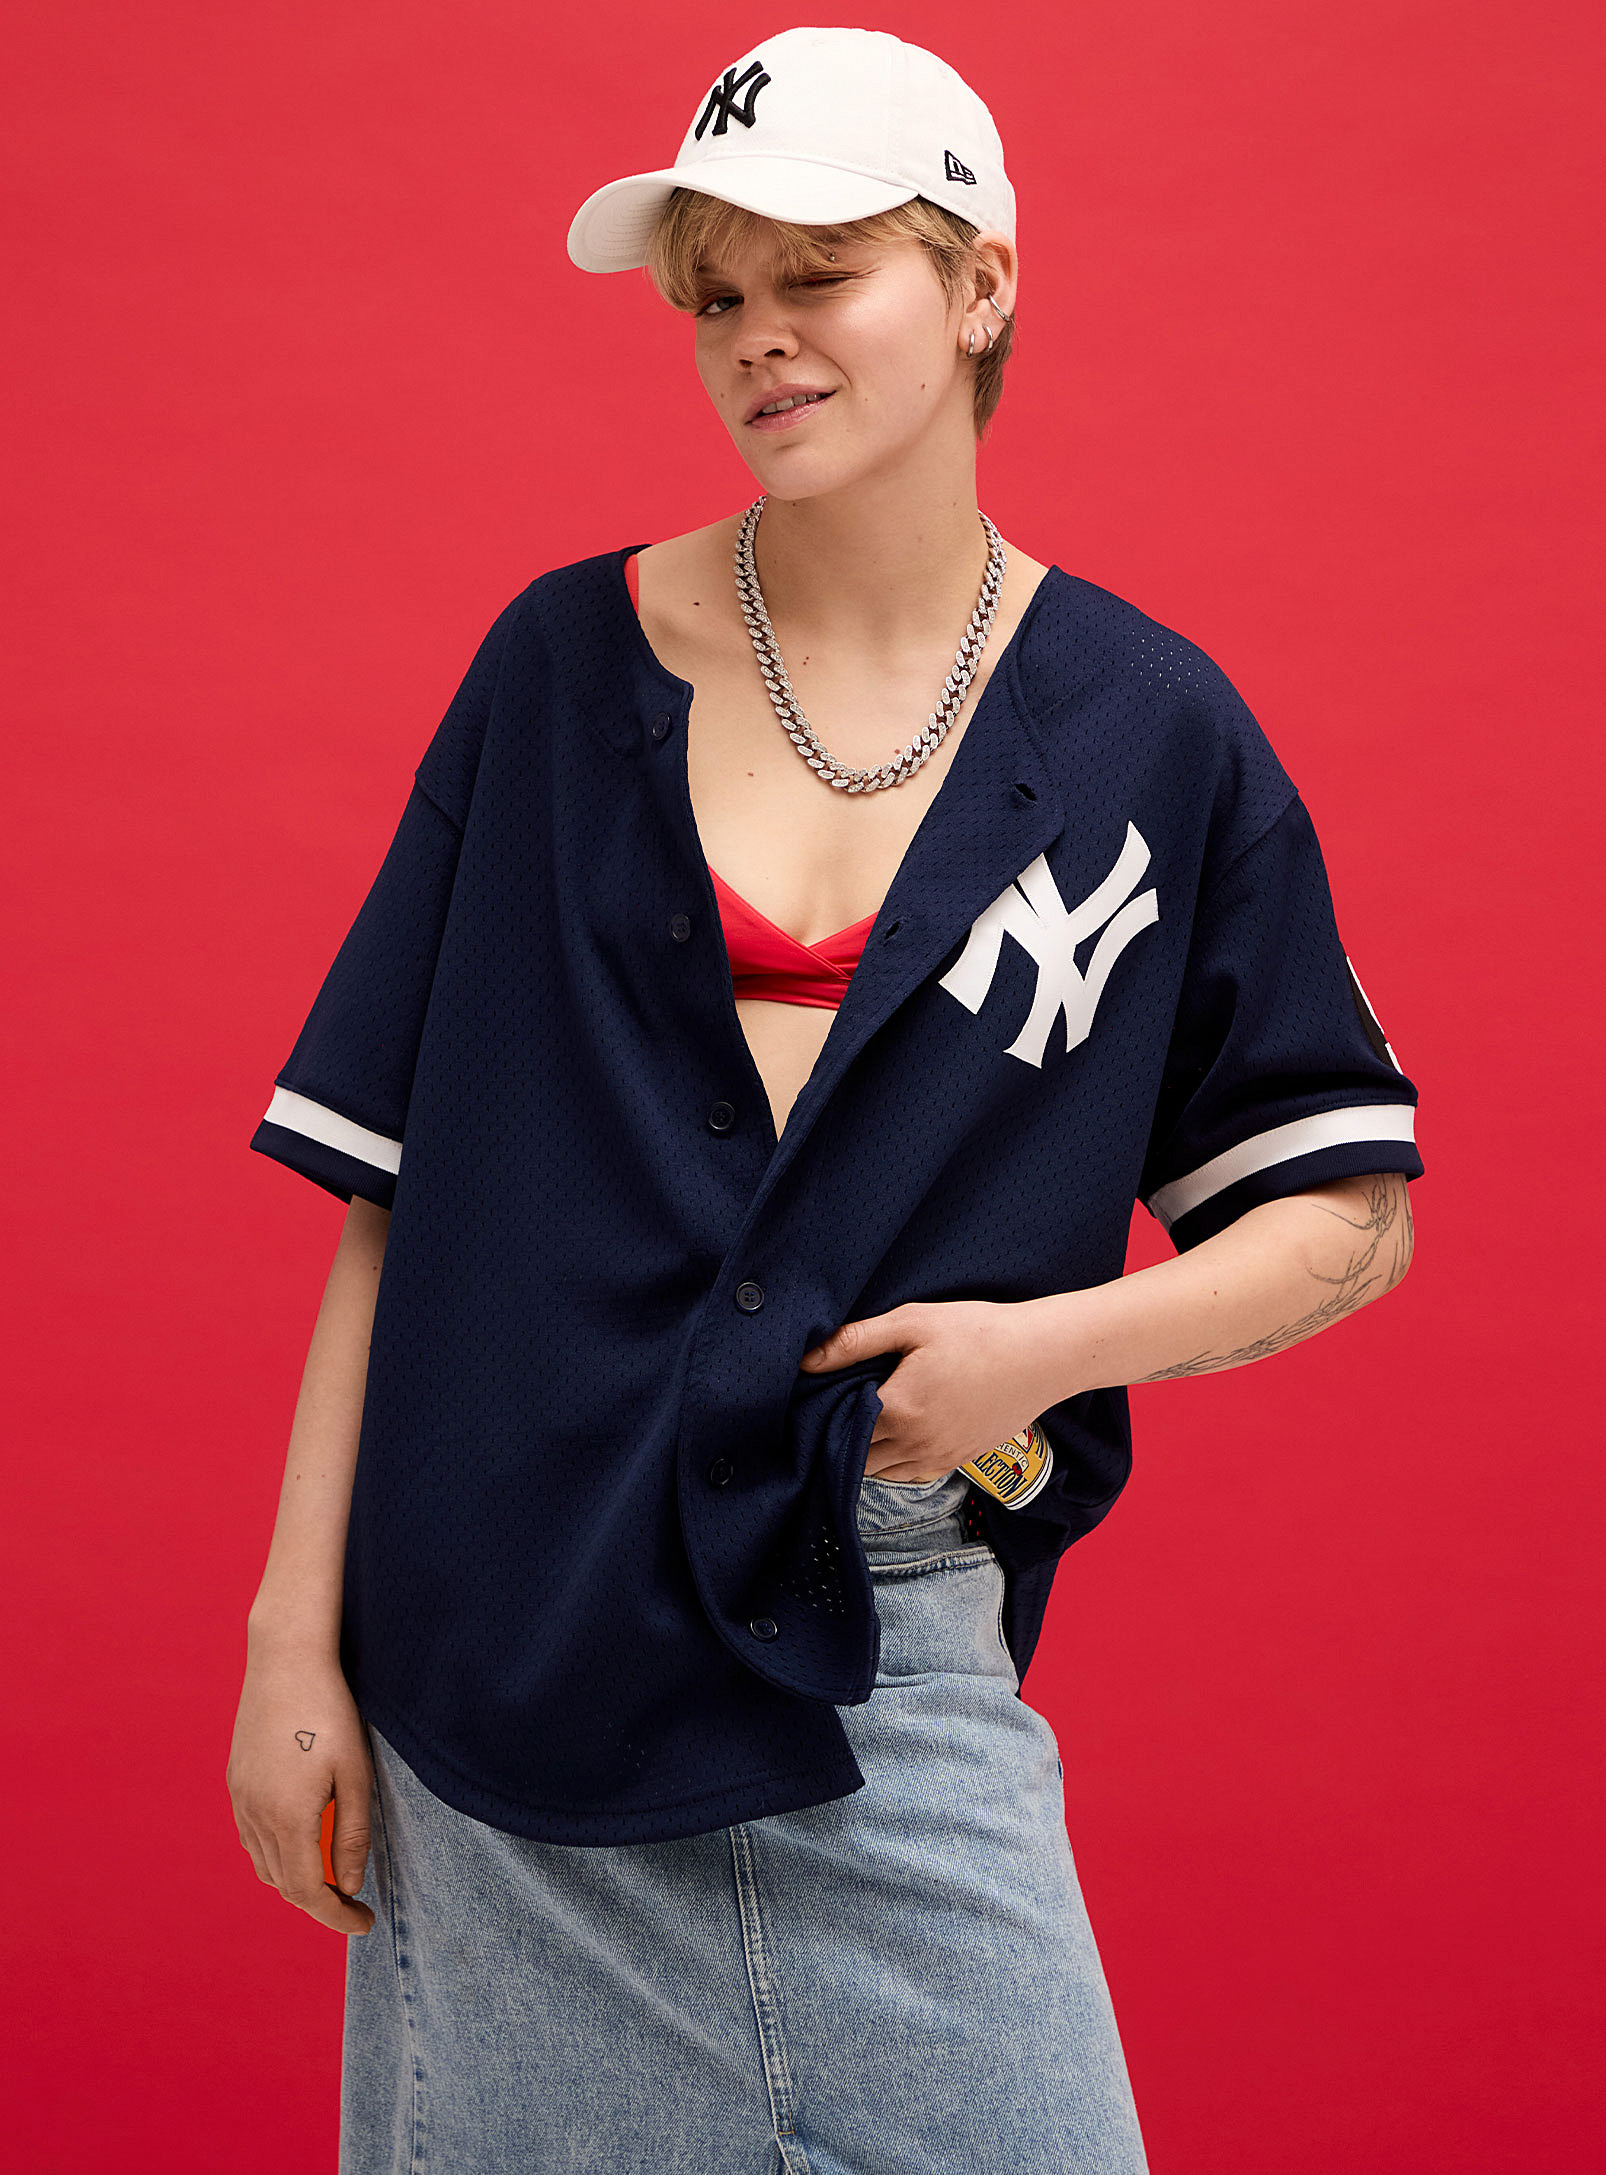 Mitchell & Ness - Women's Yankees baseball jersey